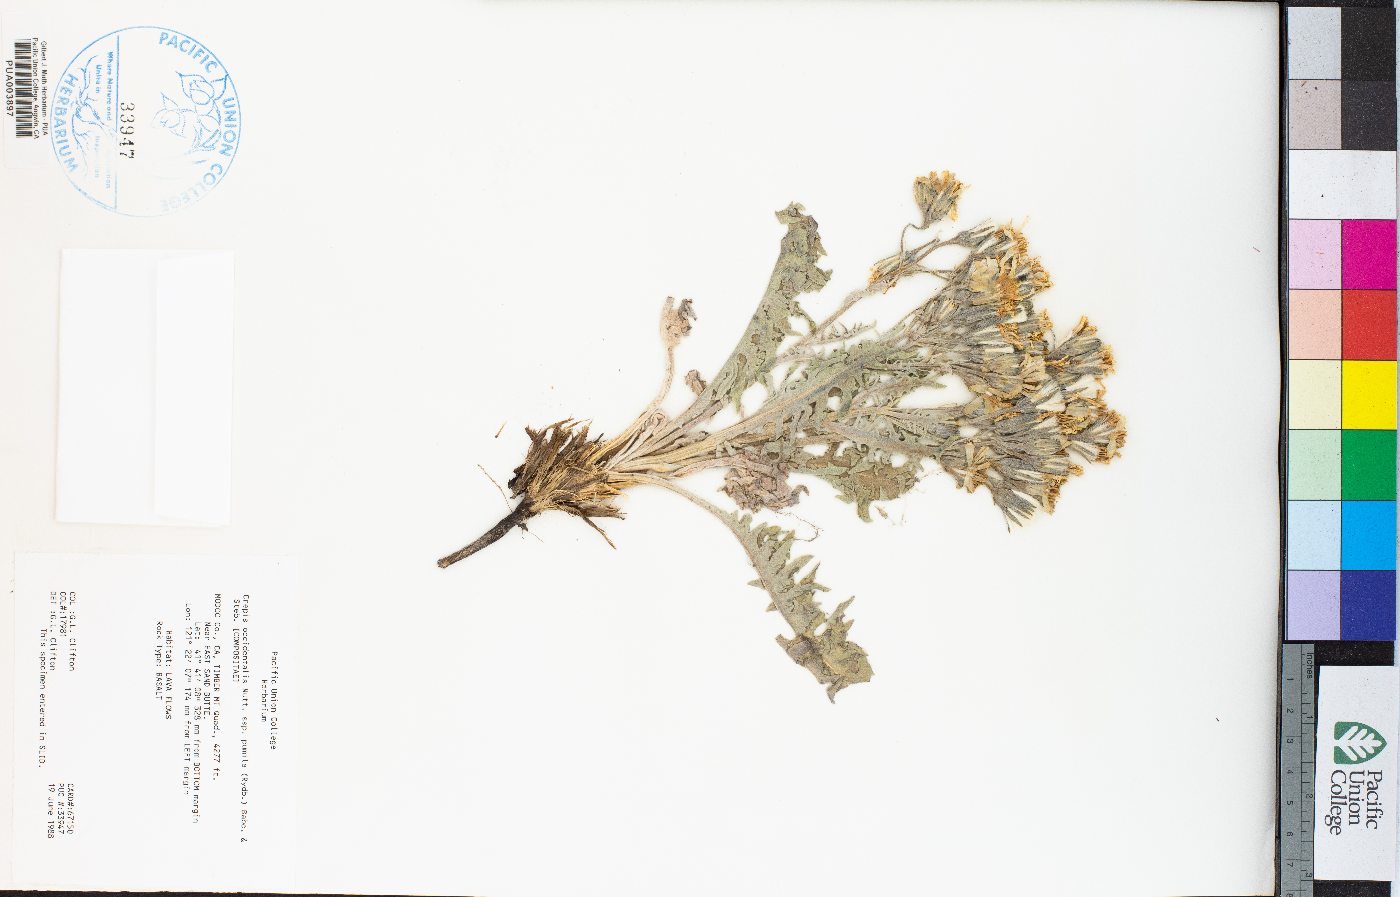 Crepis occidentalis subsp. pumila image